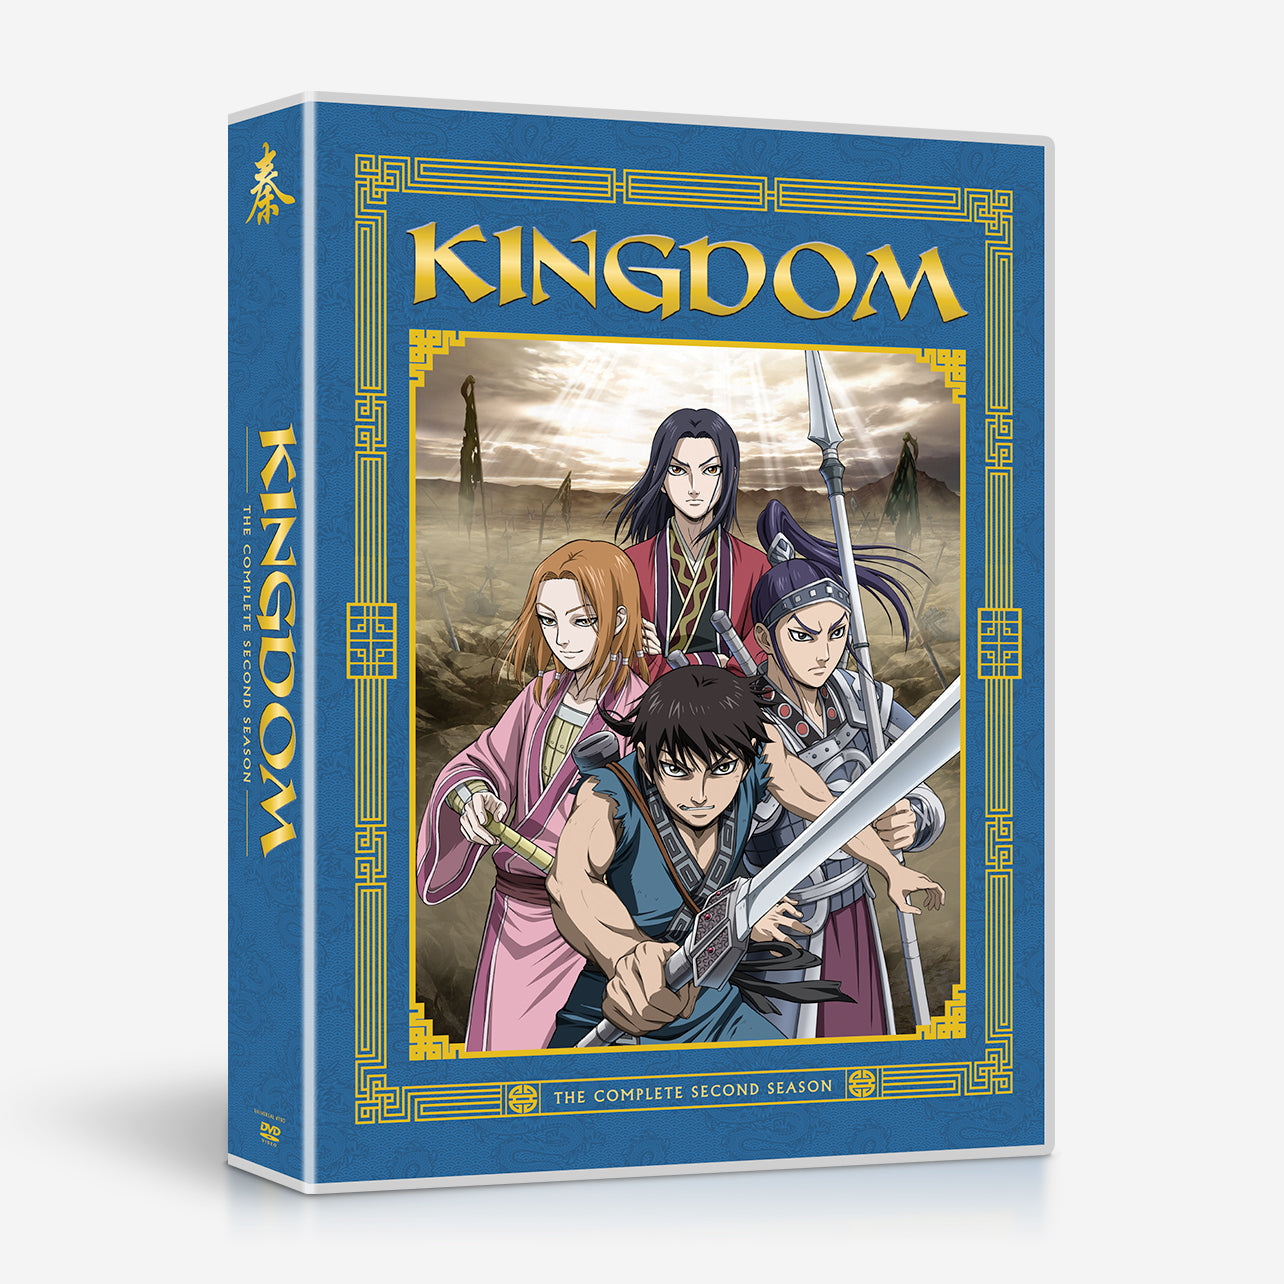 Kingdom Season 5 Release Date Confirmed In Winter 2023